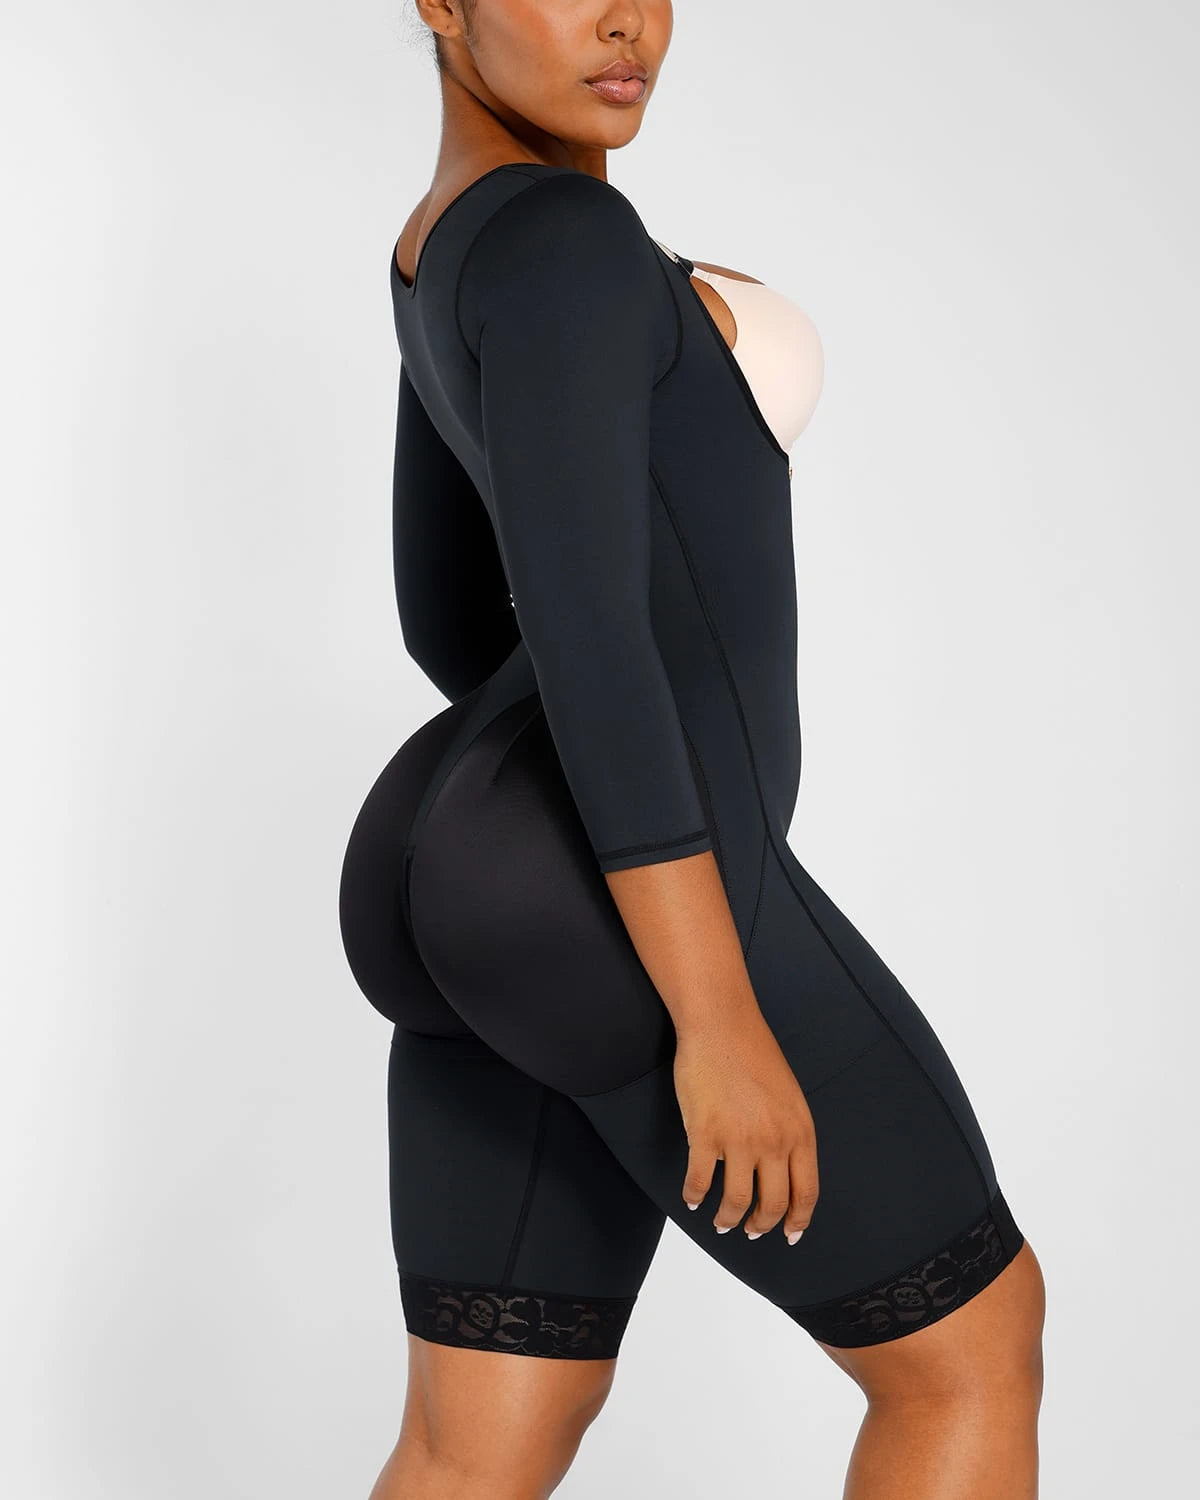 AirSlim® Open Bust Butt-Lifting Bodysuit